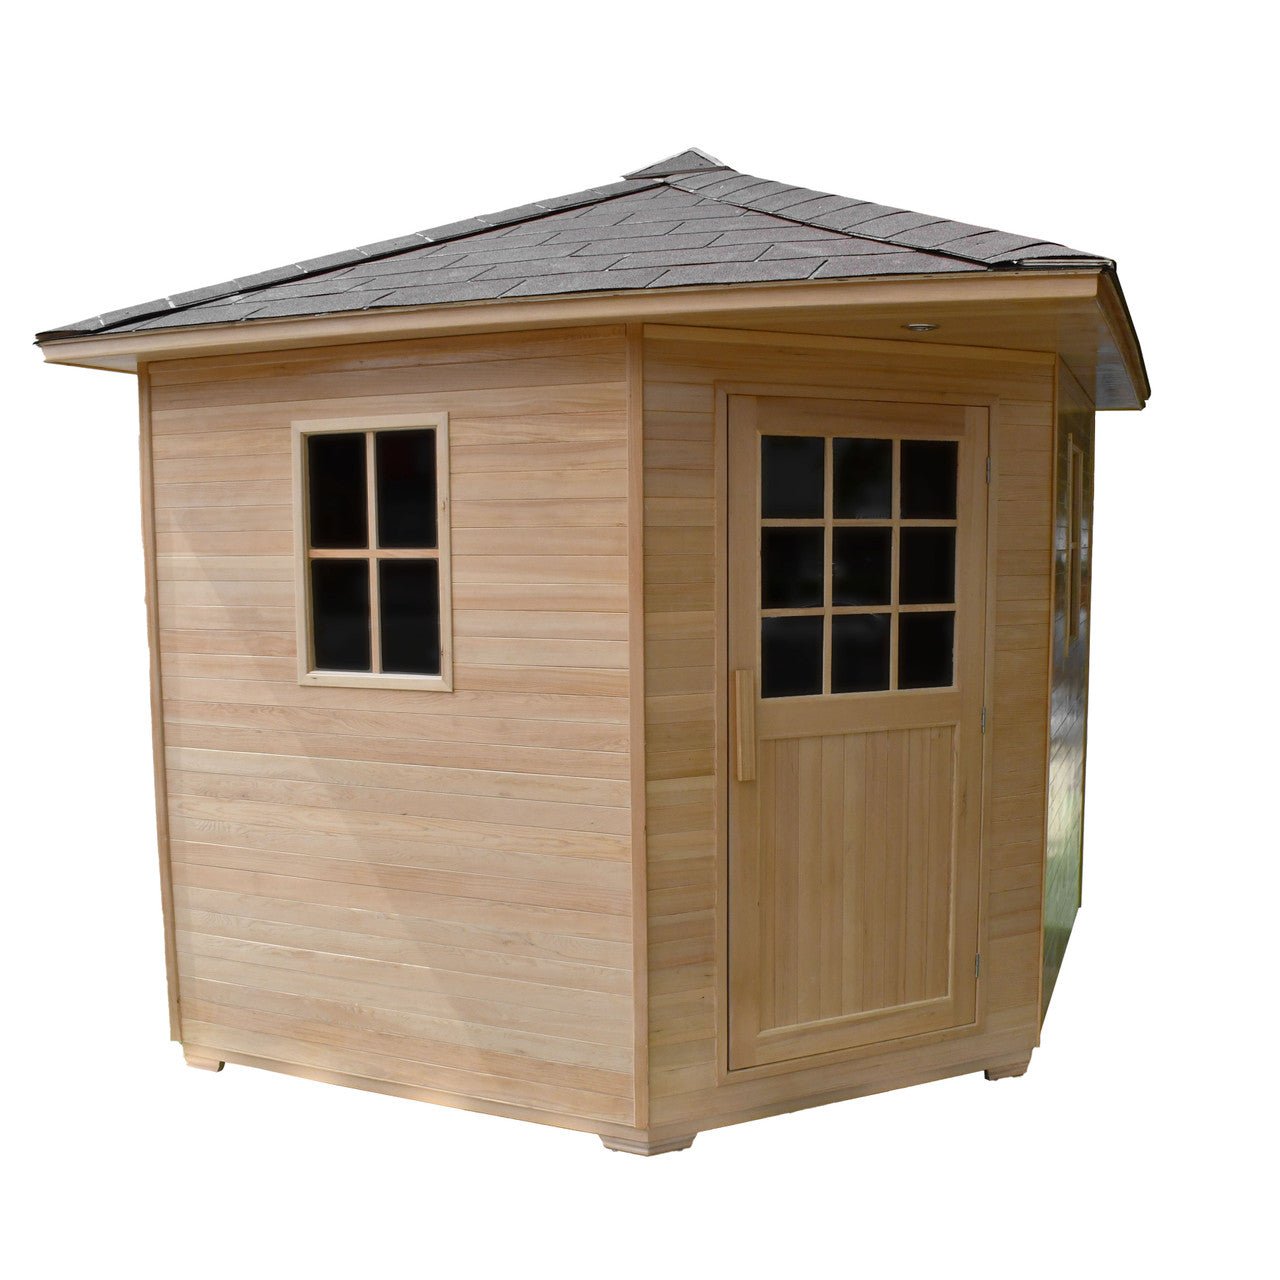 Aleko Canadian Hemlock Wet Dry Outdoor Sauna with Asphalt Roof - 8 kW UL Certified Heater - 8 Person - The Sauna World